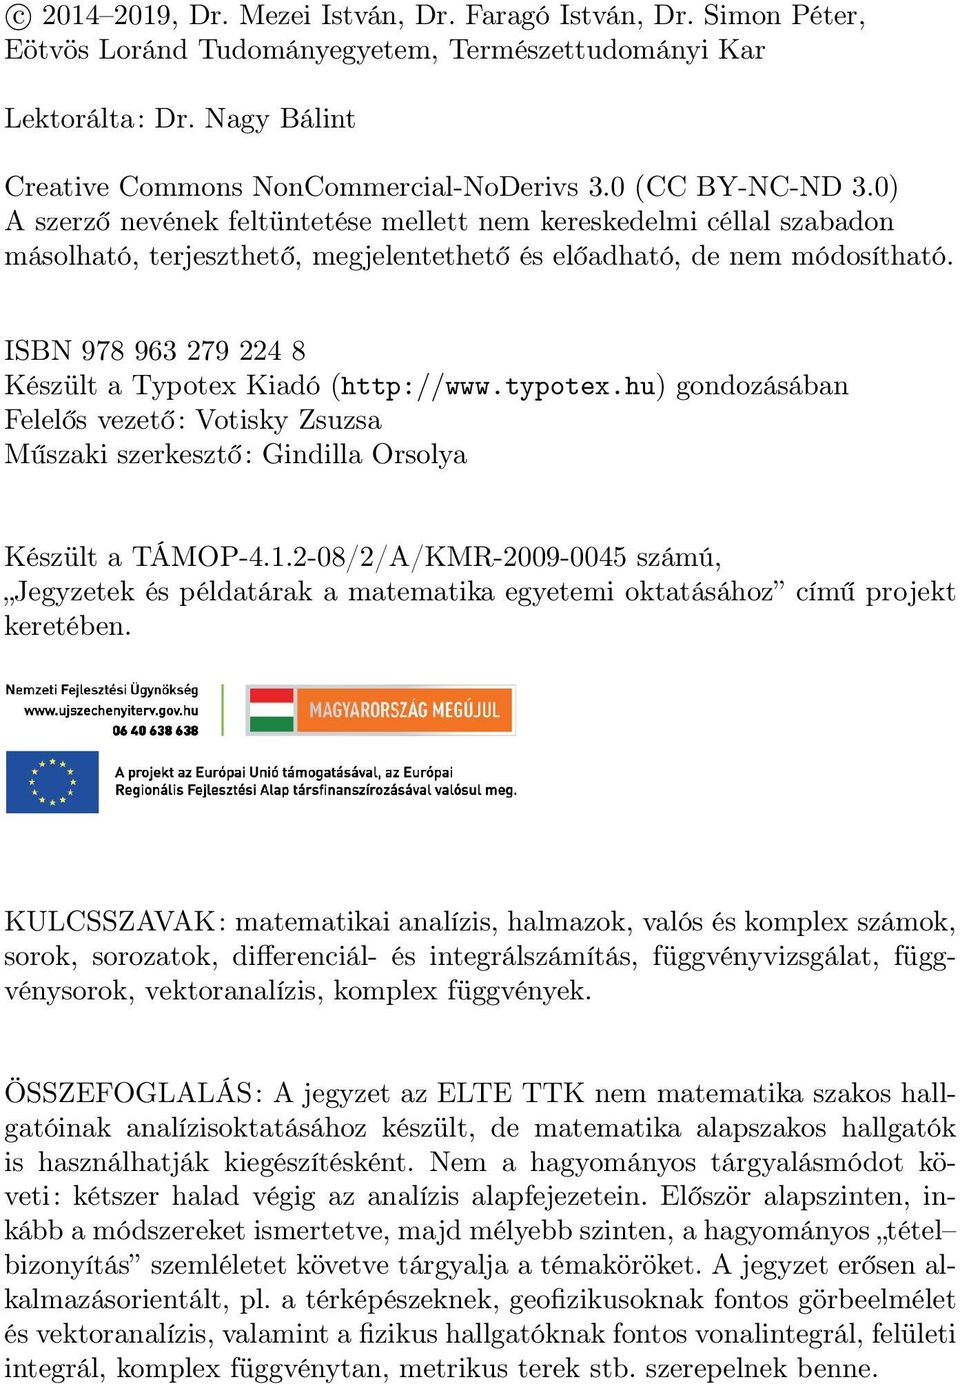 ISBN 978 963 279 224 8 Készült Typotex Kidó (http://www.typotex.hu) gondozásábn Felelős vezető: Votisky Zsuzs Műszki szerkesztő: Gindill Orsoly Készült TÁMOP-4.1.